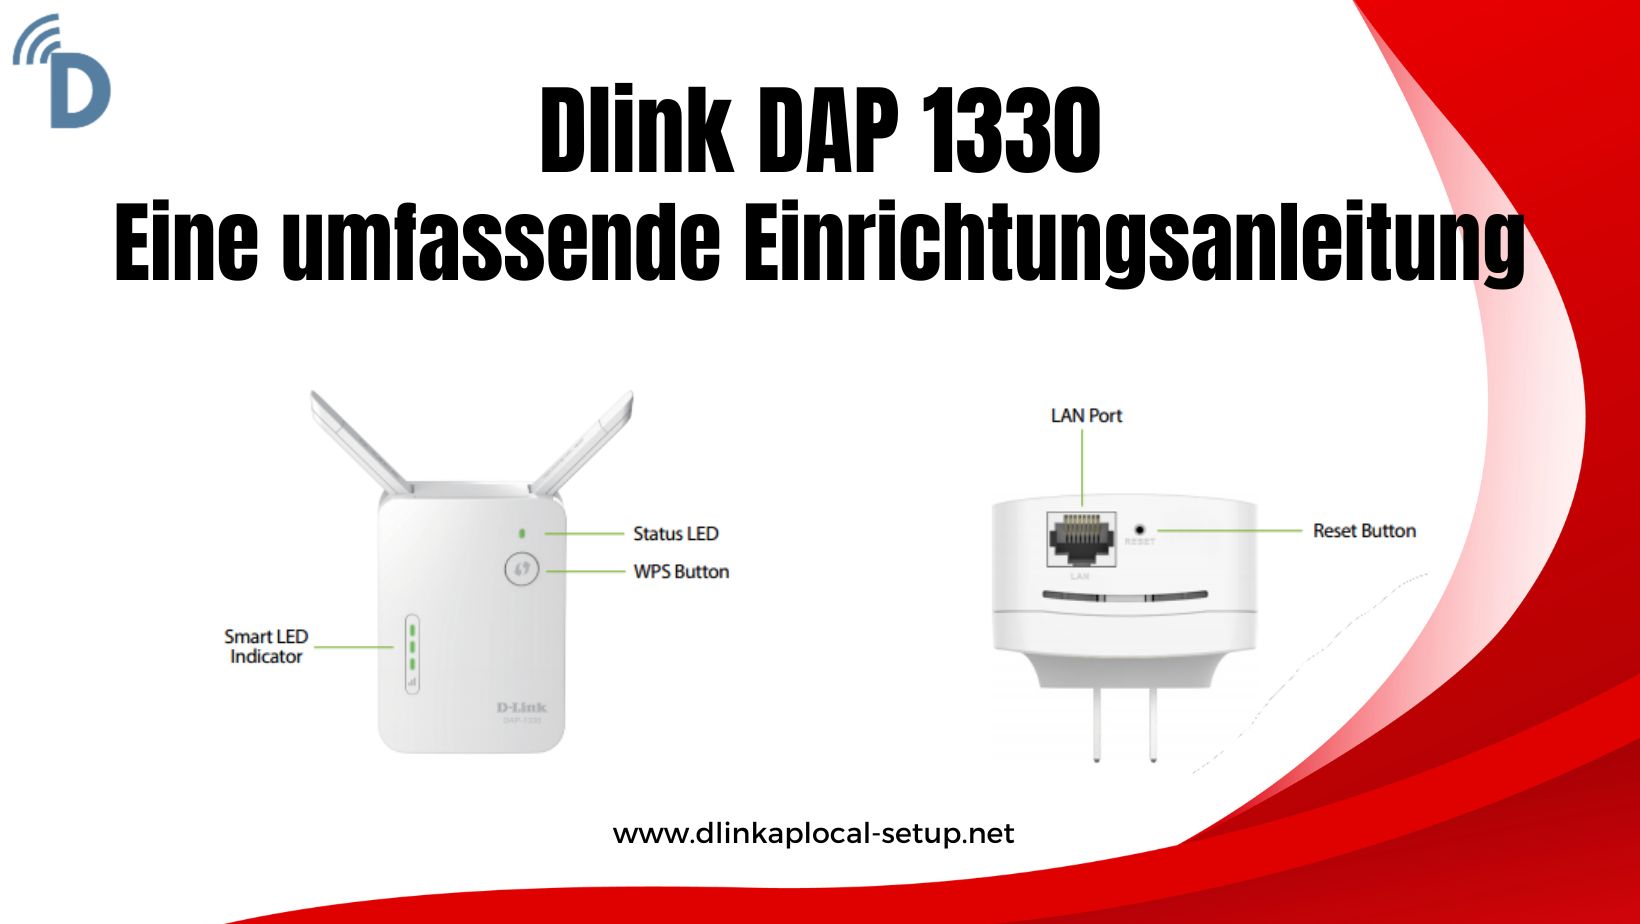 Dlink DAP 1330